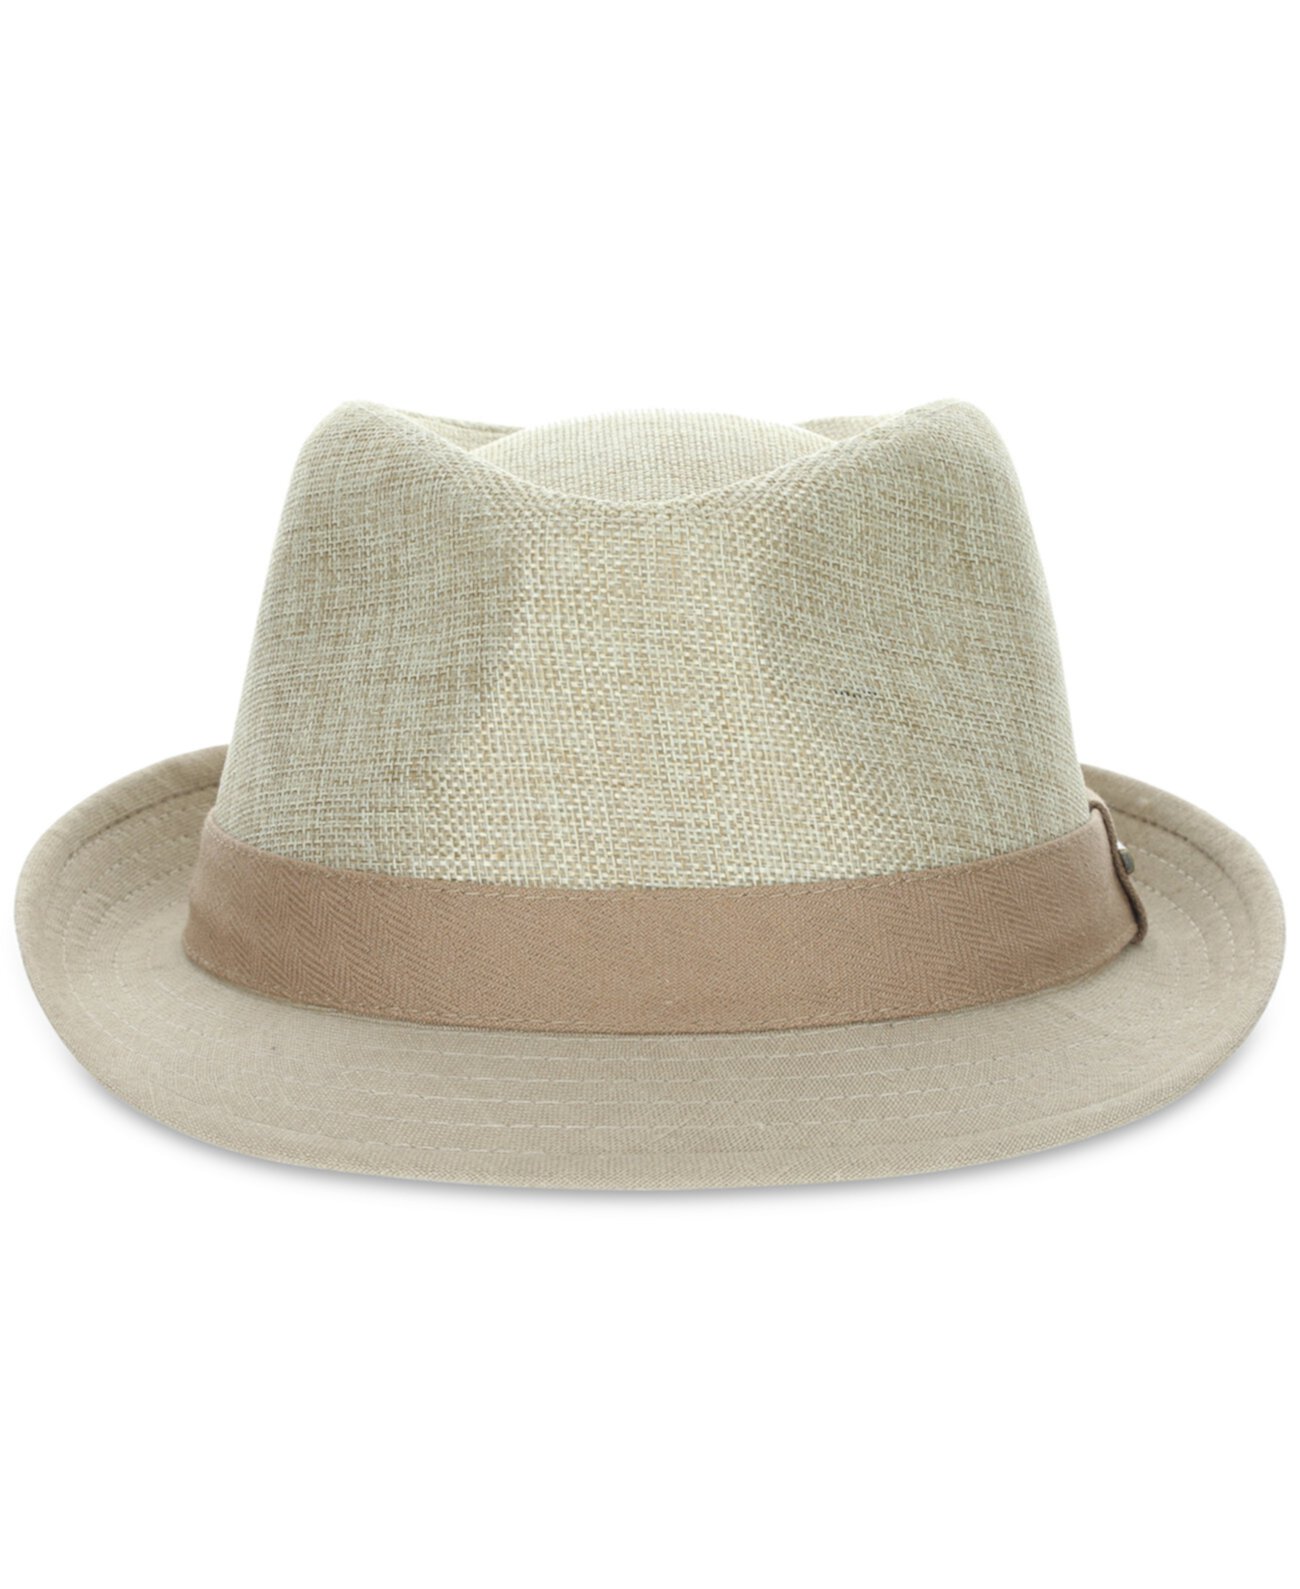 Мужская шляпа-федора Dorfman Pacific из тростниковой ткани SCALA